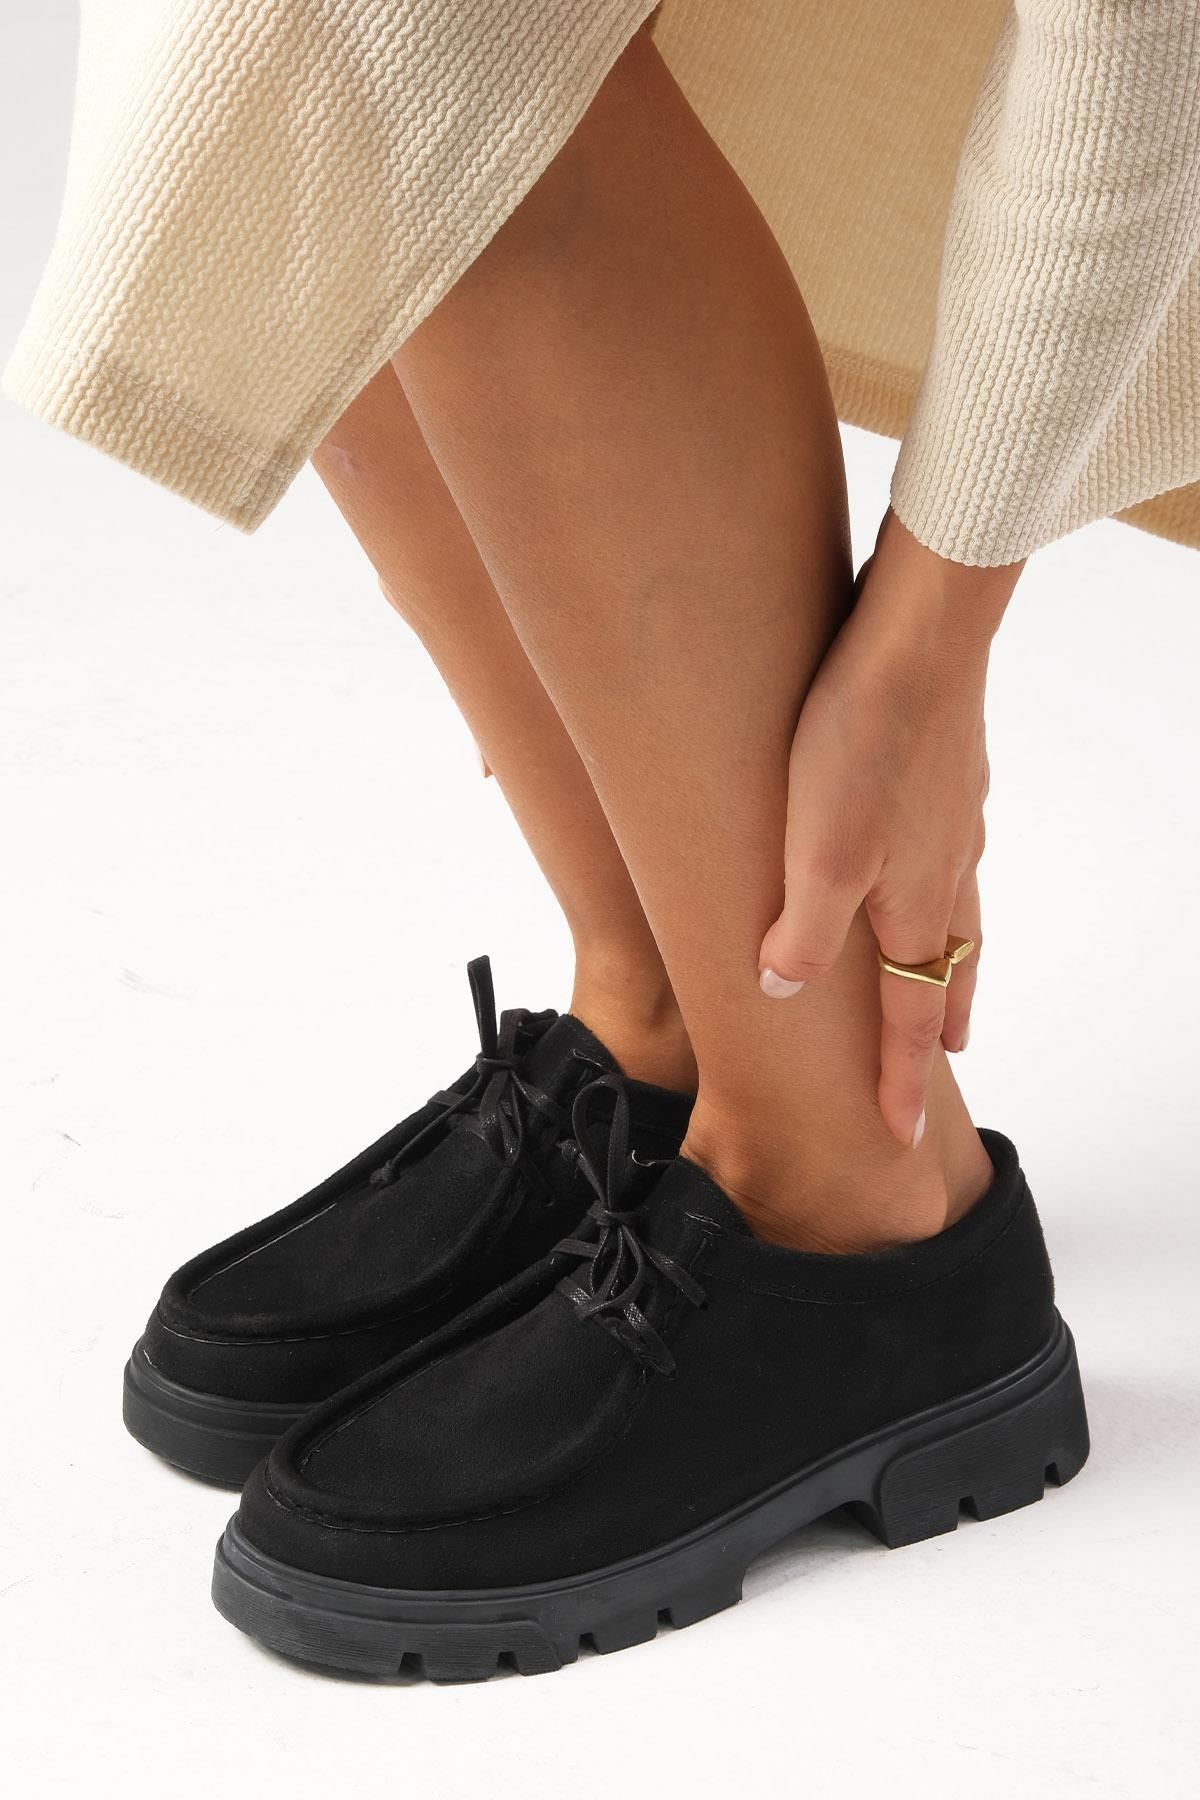 Mio Gusto Hope Siyah Renk Kalın Tabanlı Kadın Loafer Ayakkabı